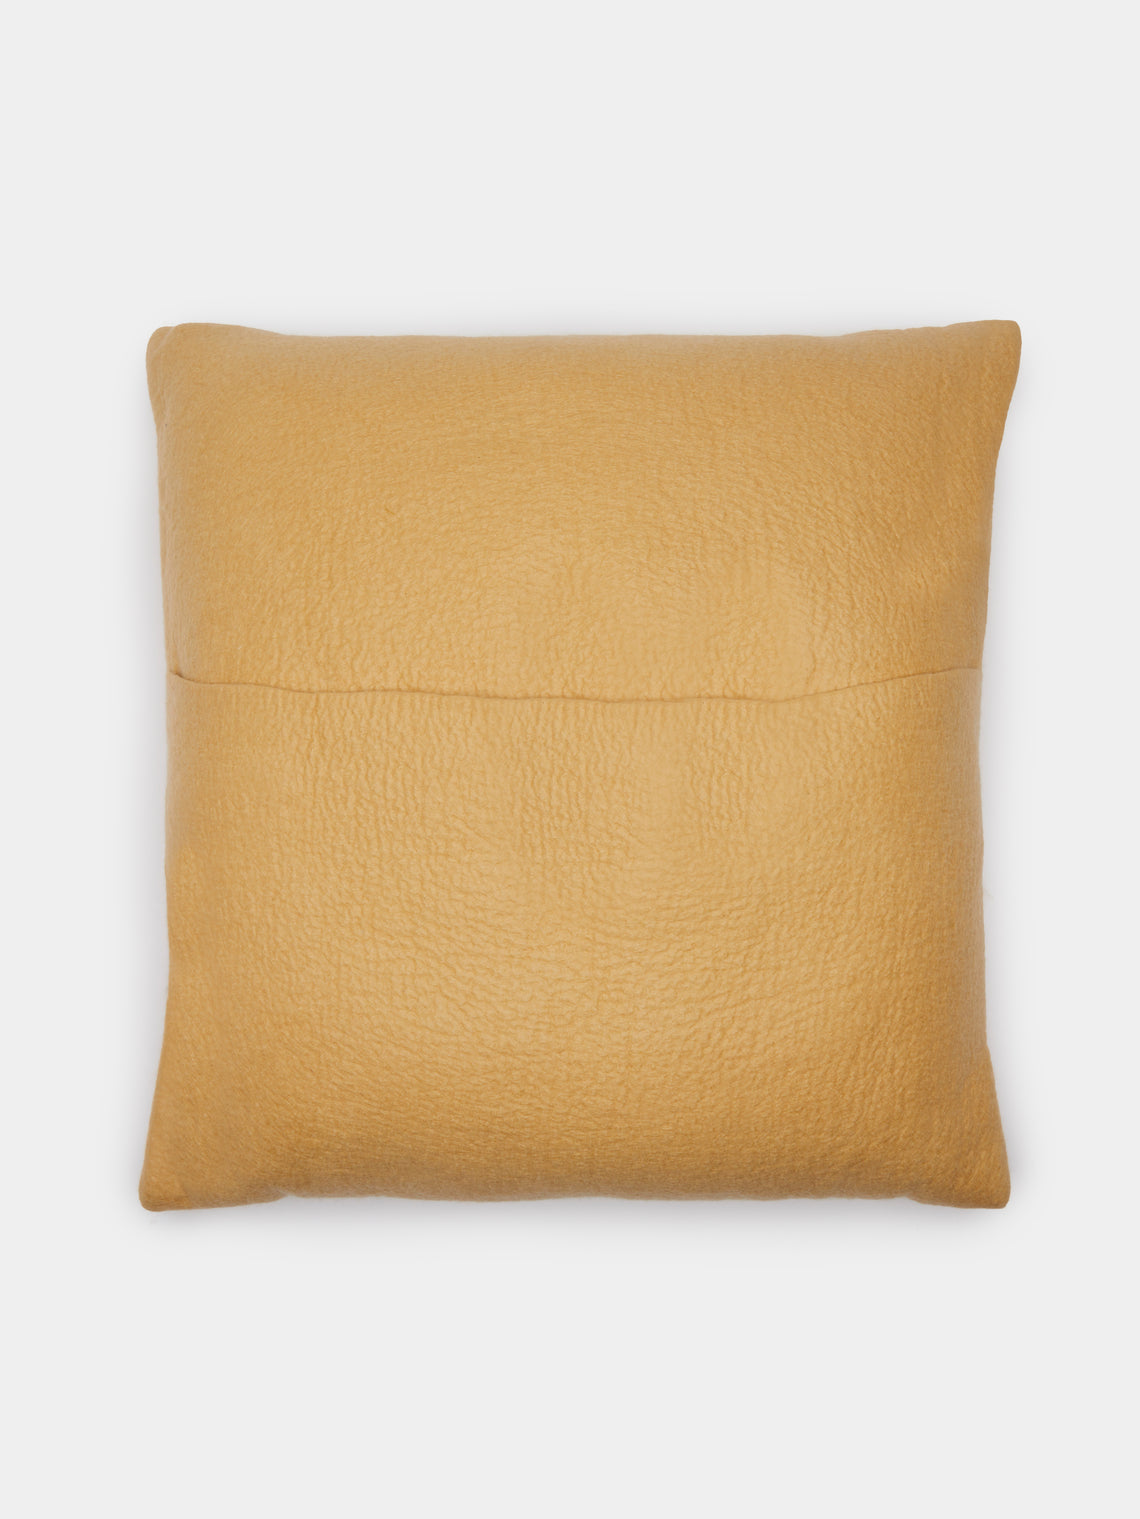 Rose Uniacke - Hand-Dyed Felted Cashmere Large Cushion - Gold - ABASK